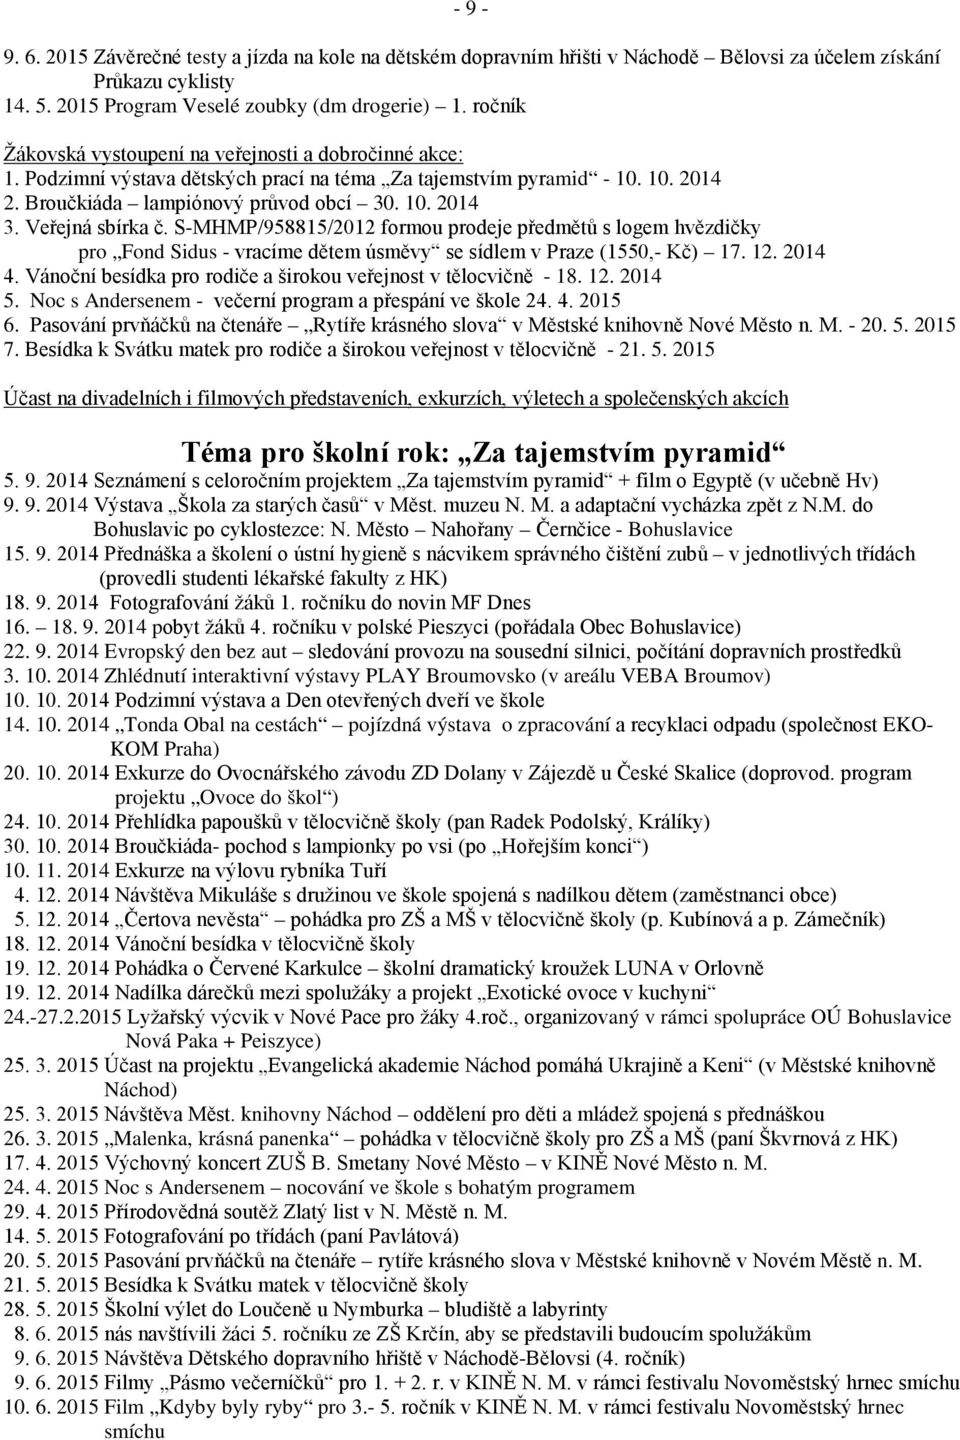 Veřejná sbírka č. S-MHMP/958815/2012 formou prodeje předmětů s logem hvězdičky pro Fond Sidus - vracíme dětem úsměvy se sídlem v Praze (1550,- Kč) 17. 12. 2014 4.